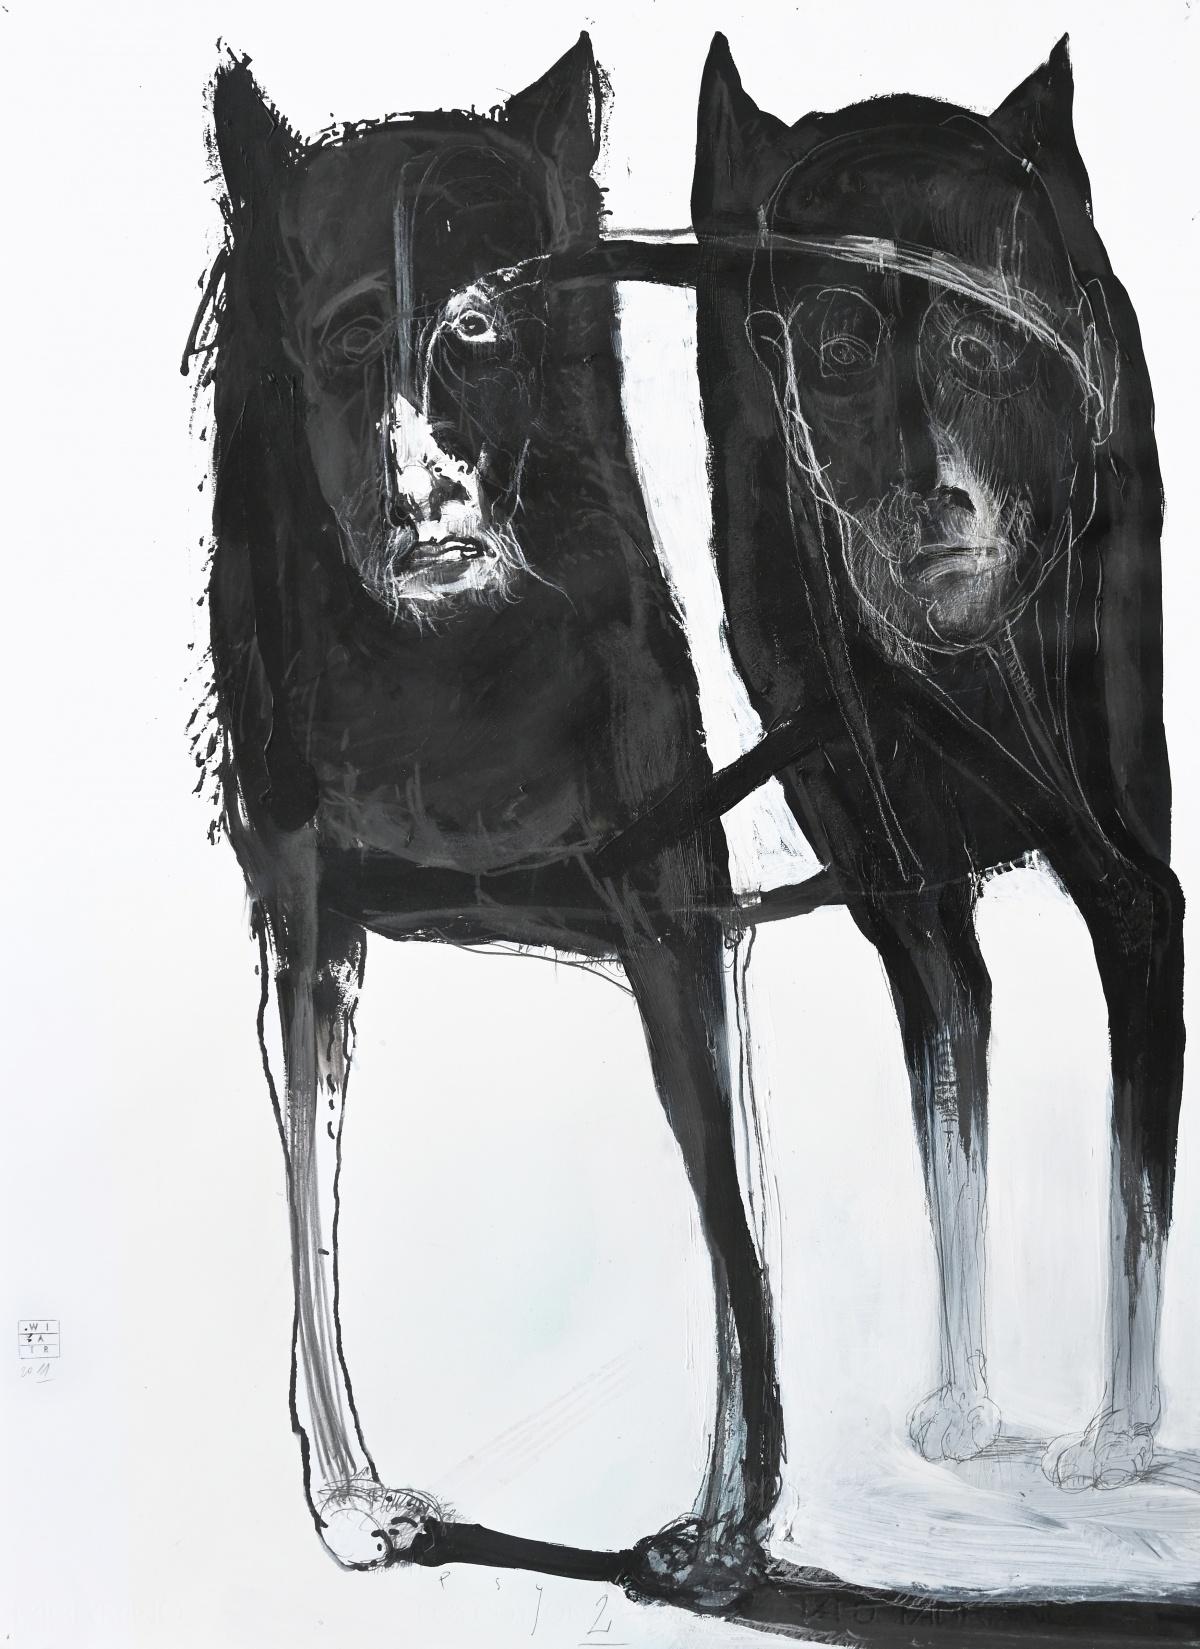 Figurative Art Zdzislaw Wiatr - Dessins contemporains « Dogs 2 », dessin figuratif, noir et blanc, artiste polonais